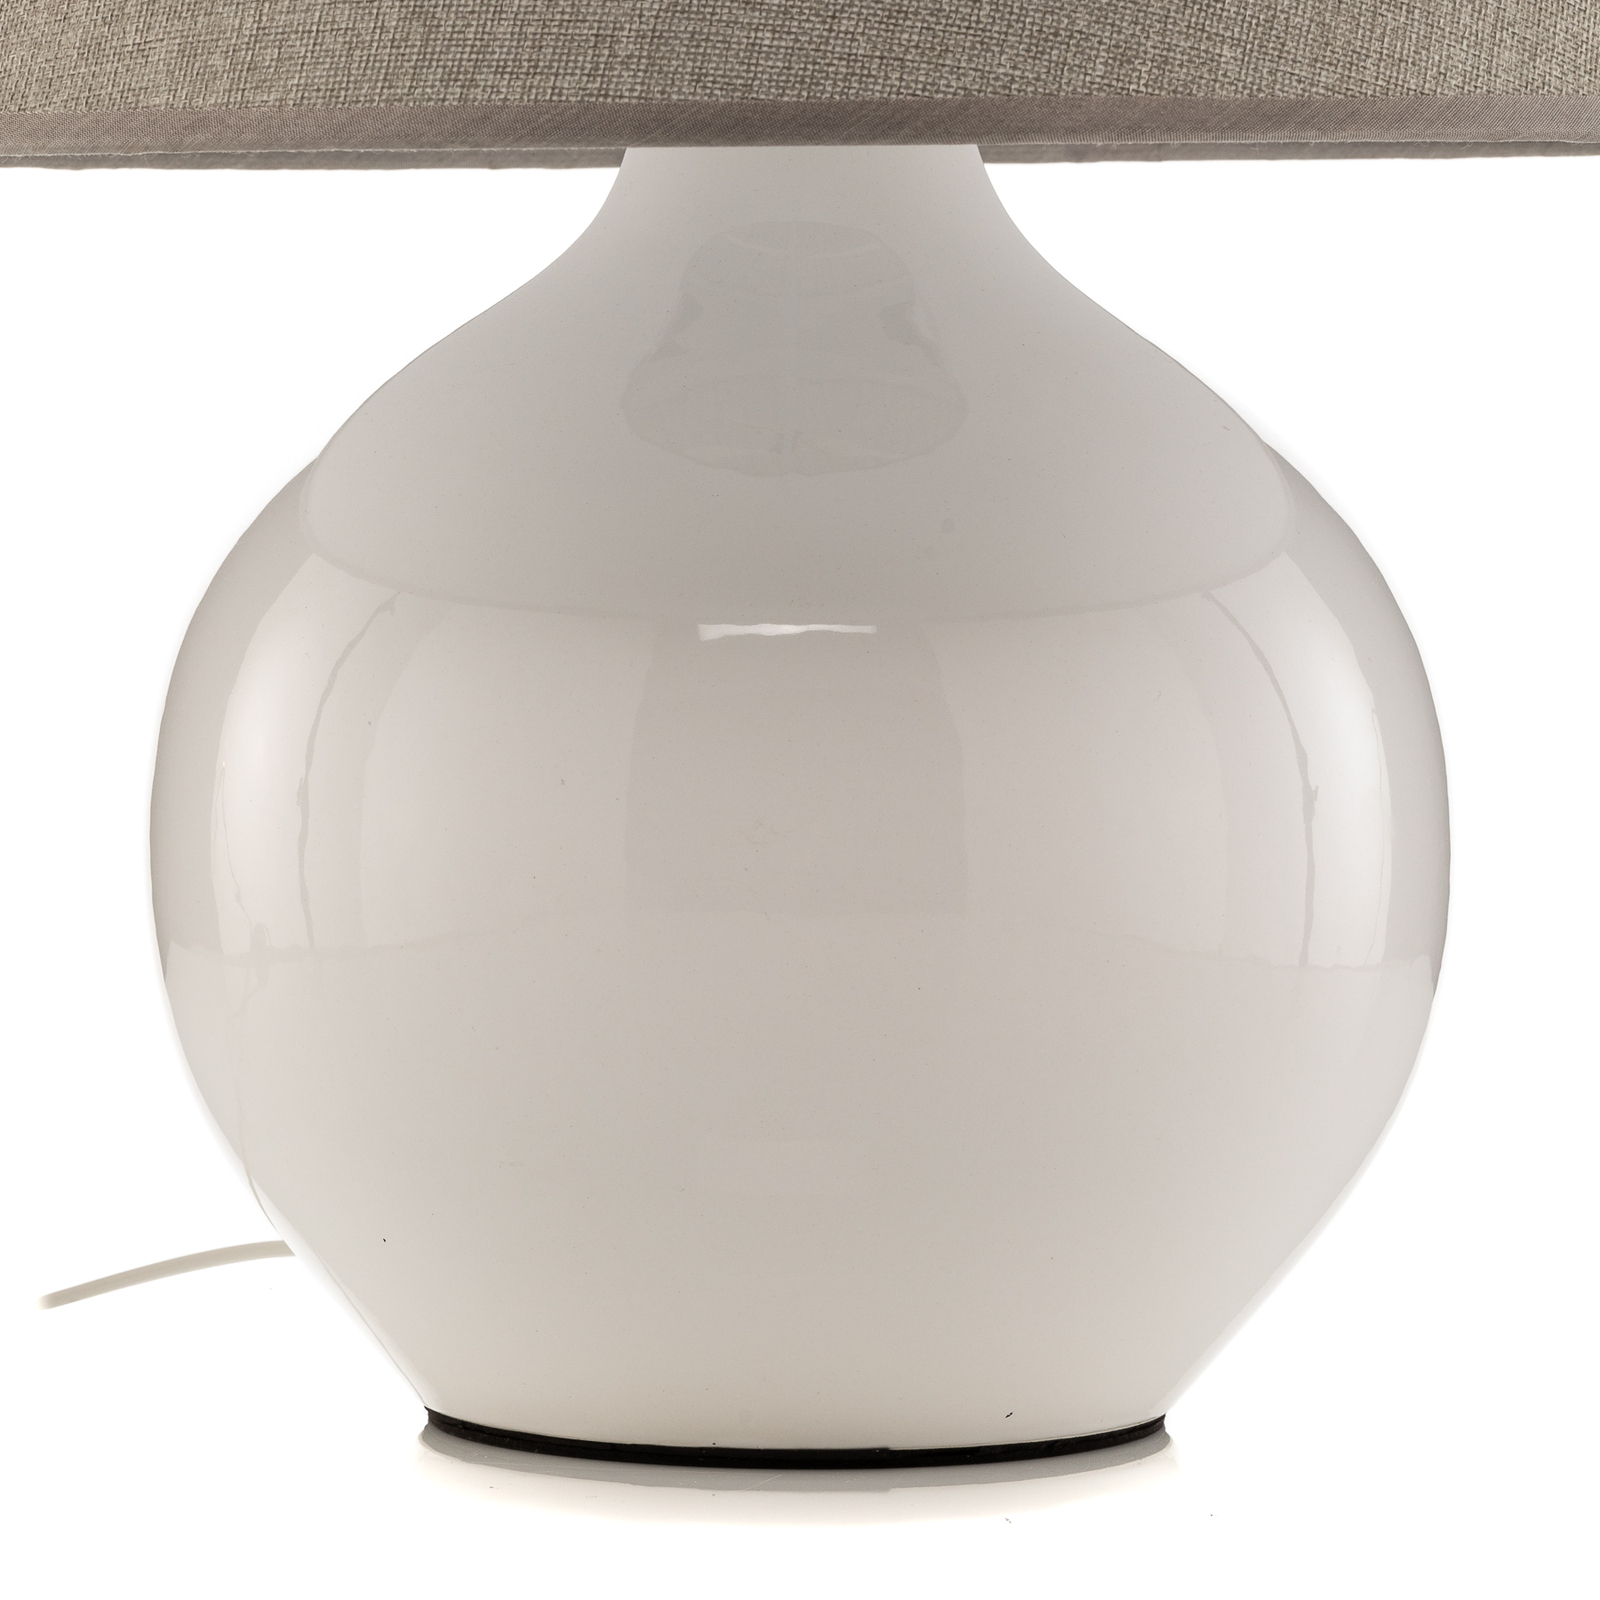 Bordlampe Sfera, 53 cm høyde, hvit/grå